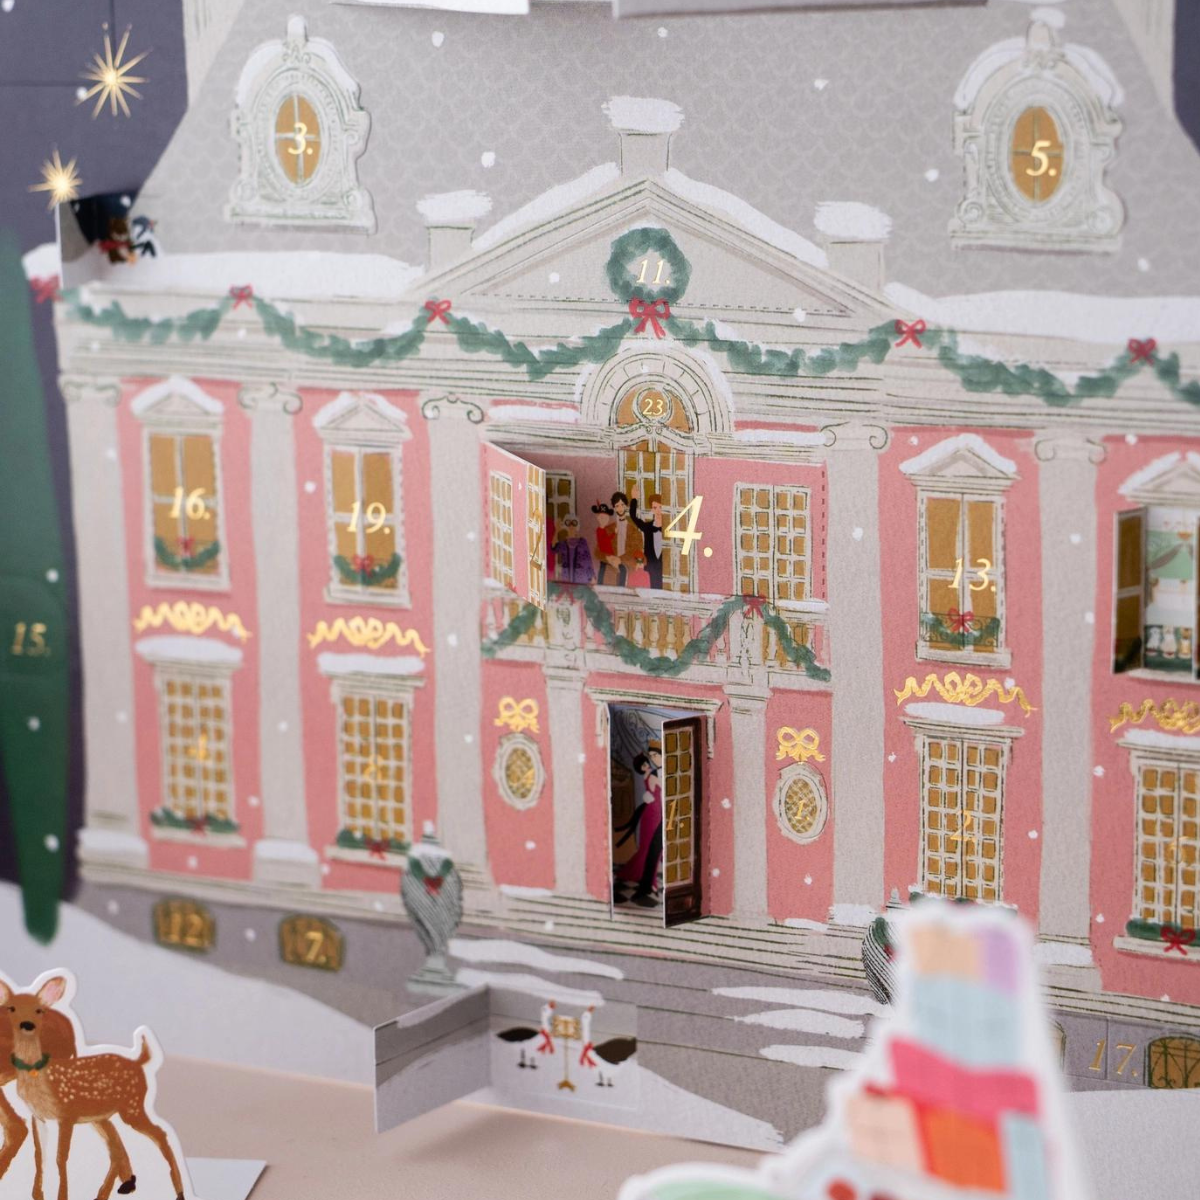 Du 1er au 25 décembre, découvrez derrière chaque fenêtre une illustration qui vous plonge dans la magie de Noël.